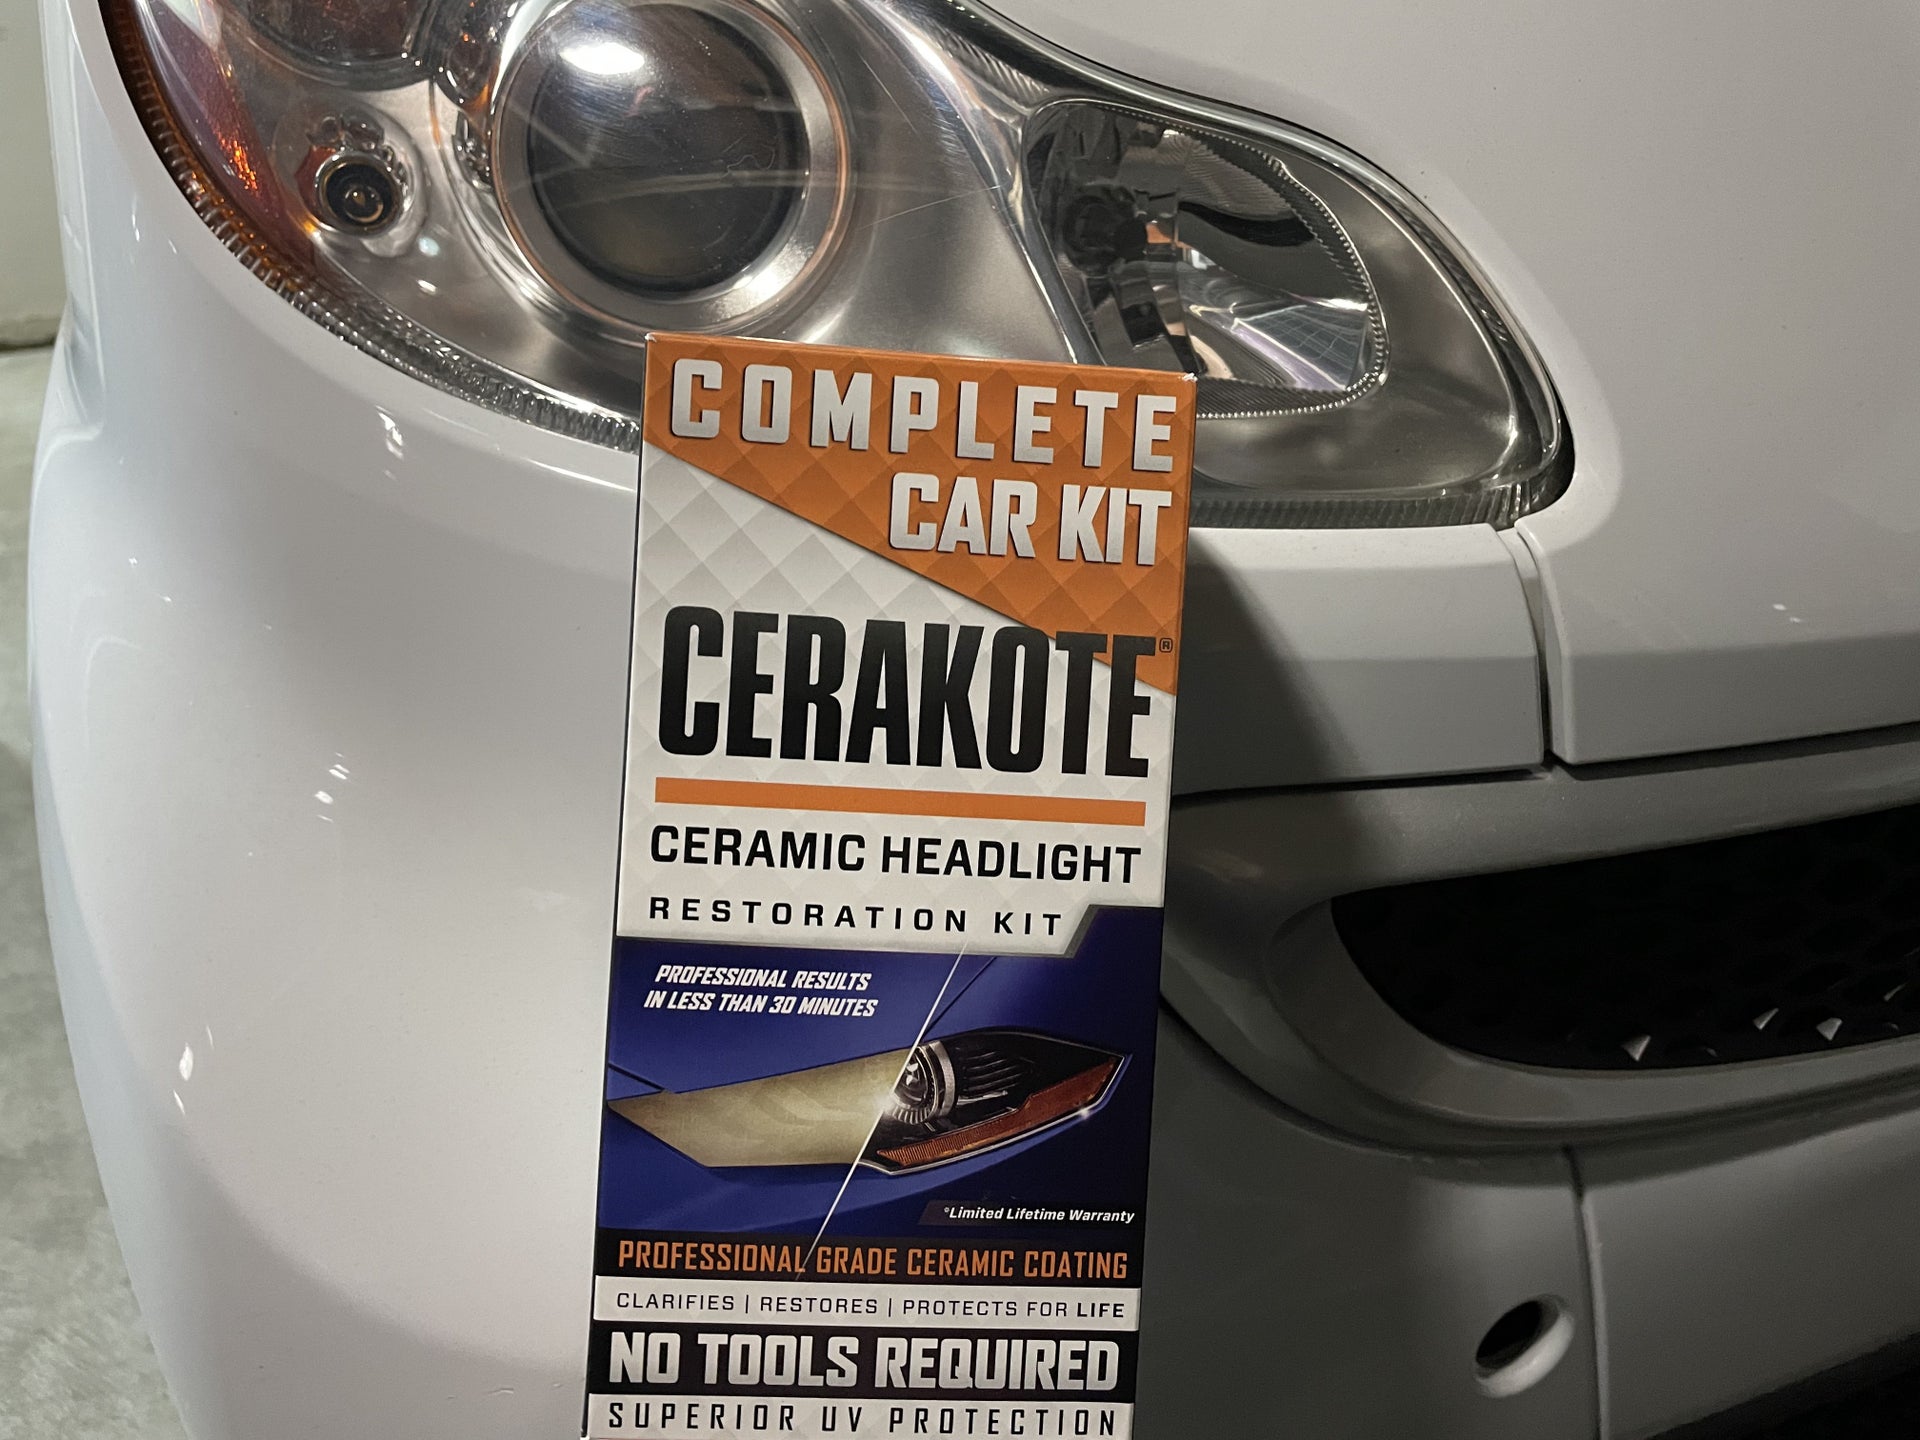 Cerakote on X: Cerakote Trim Coat is a ceramic coating that lasts